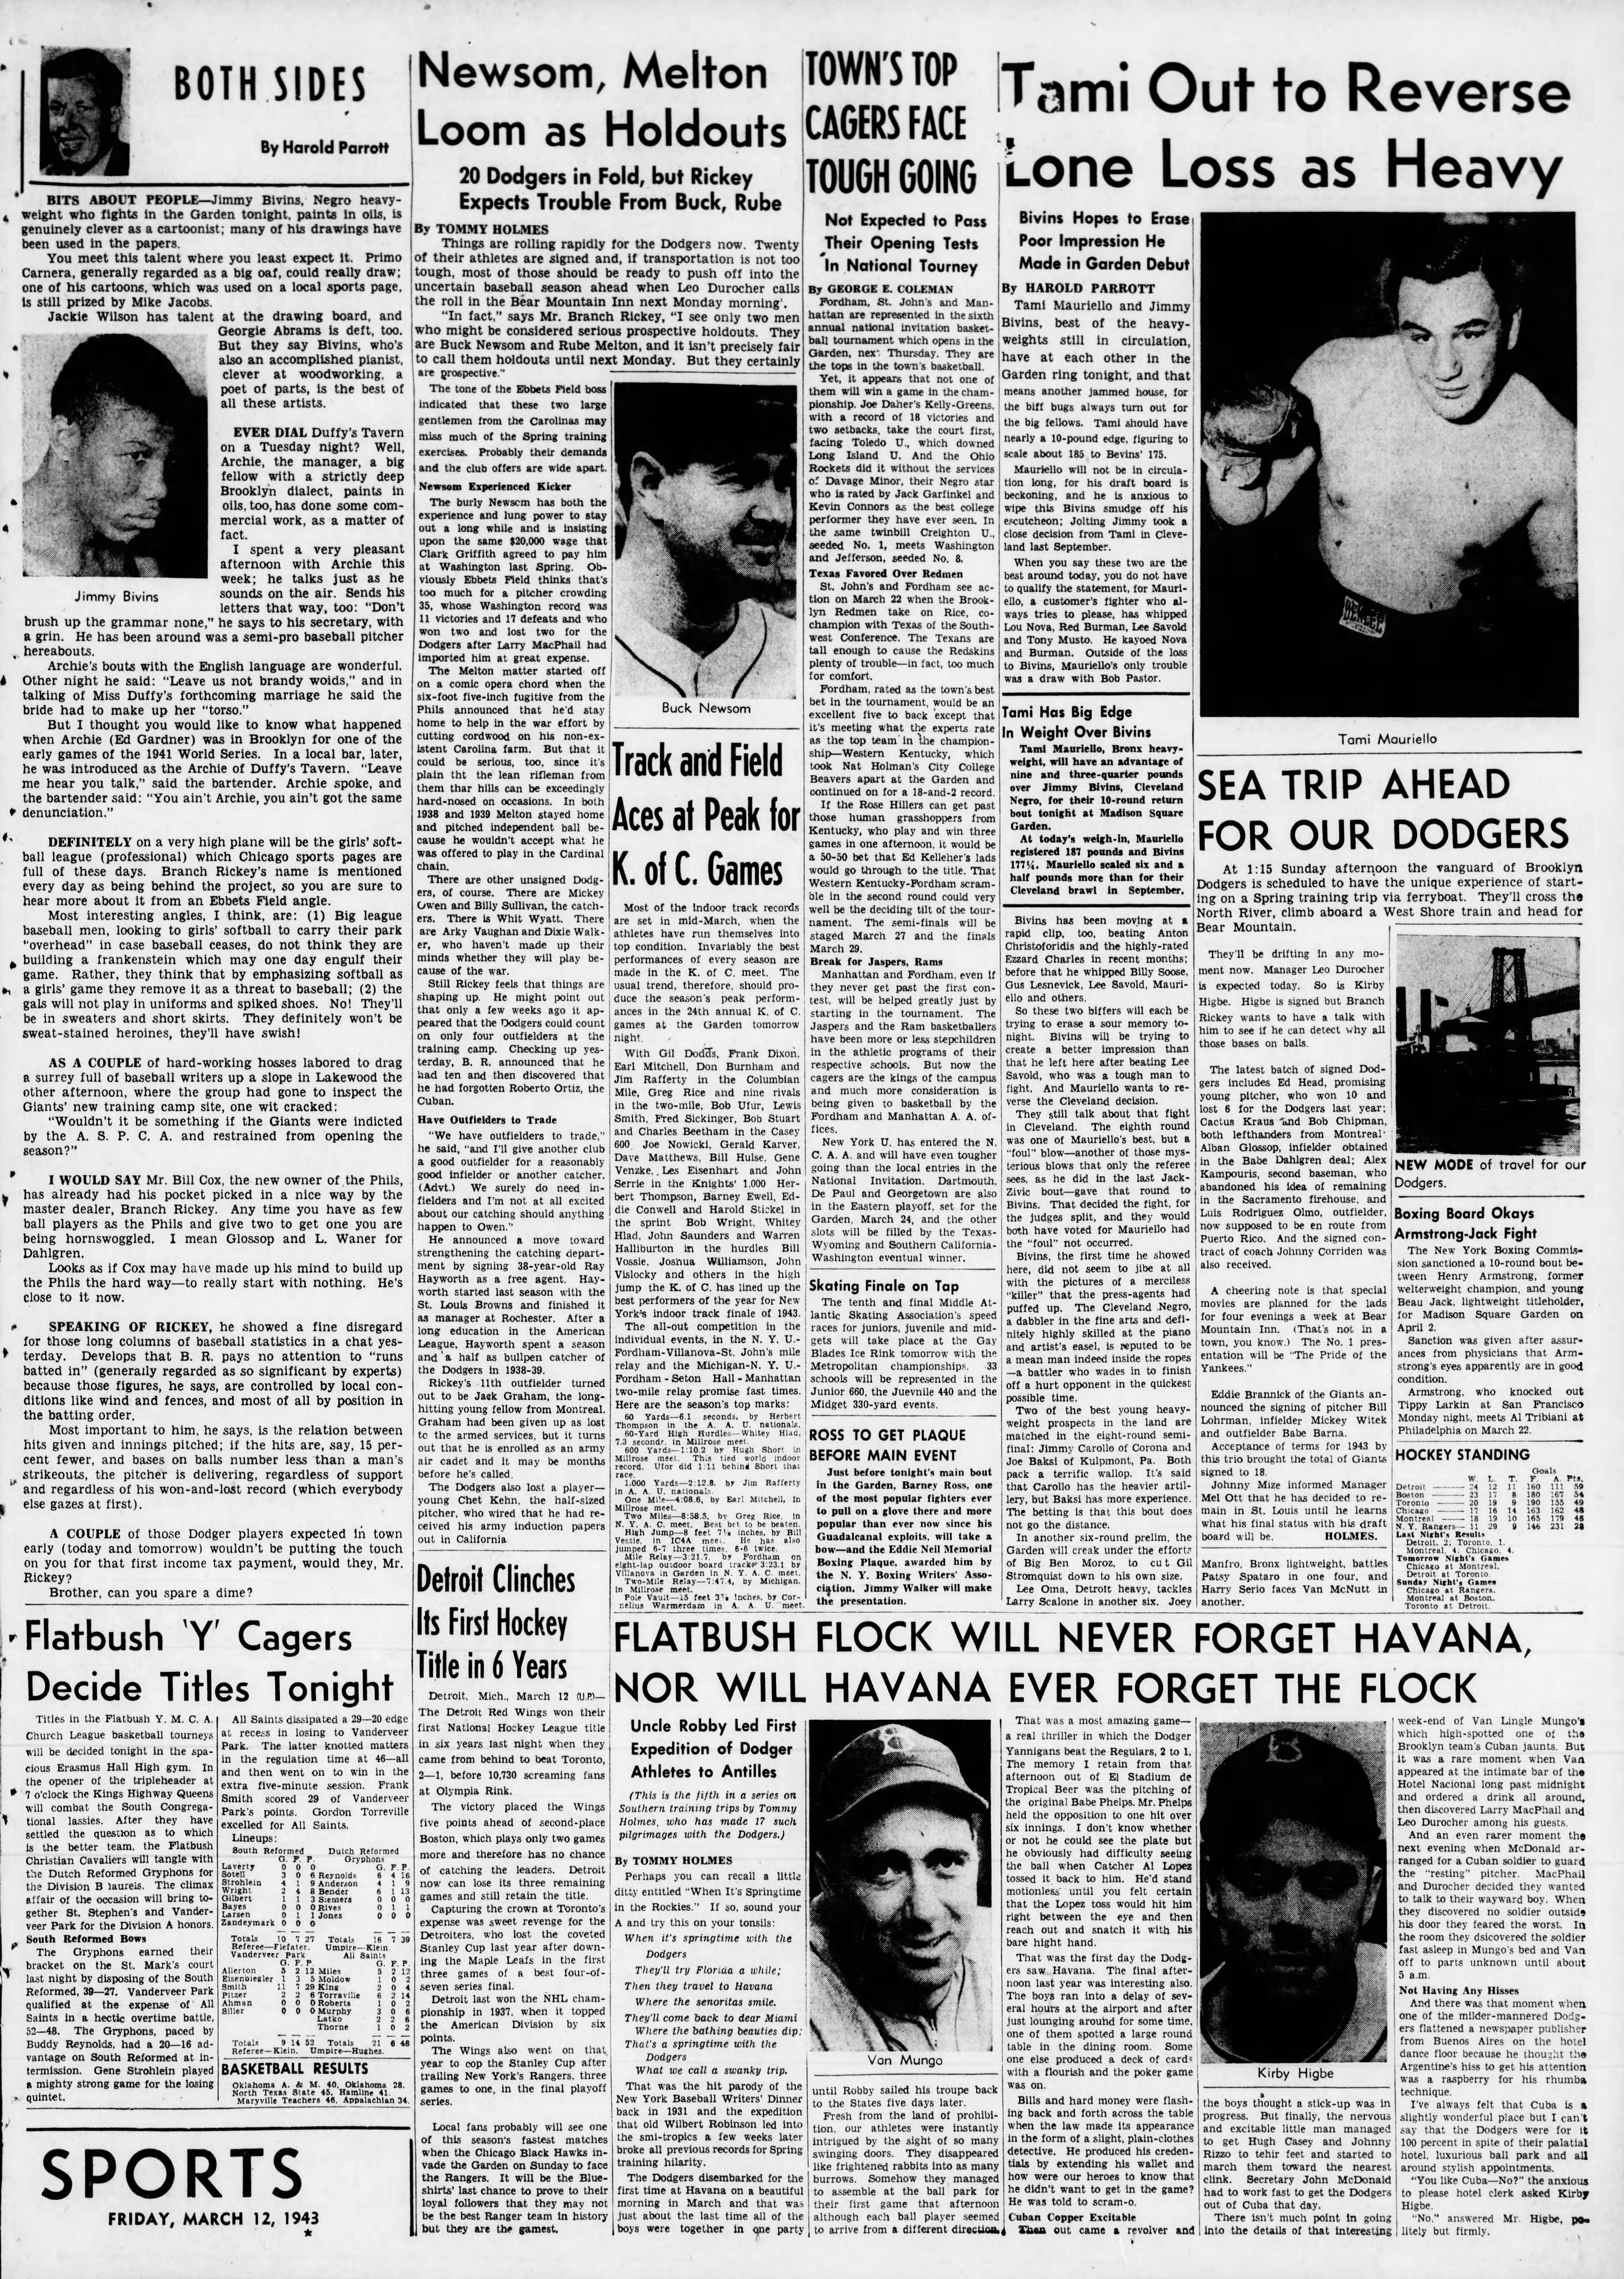 The_Brooklyn_Daily_Eagle_Fri__Mar_12__1943_(4).jpg